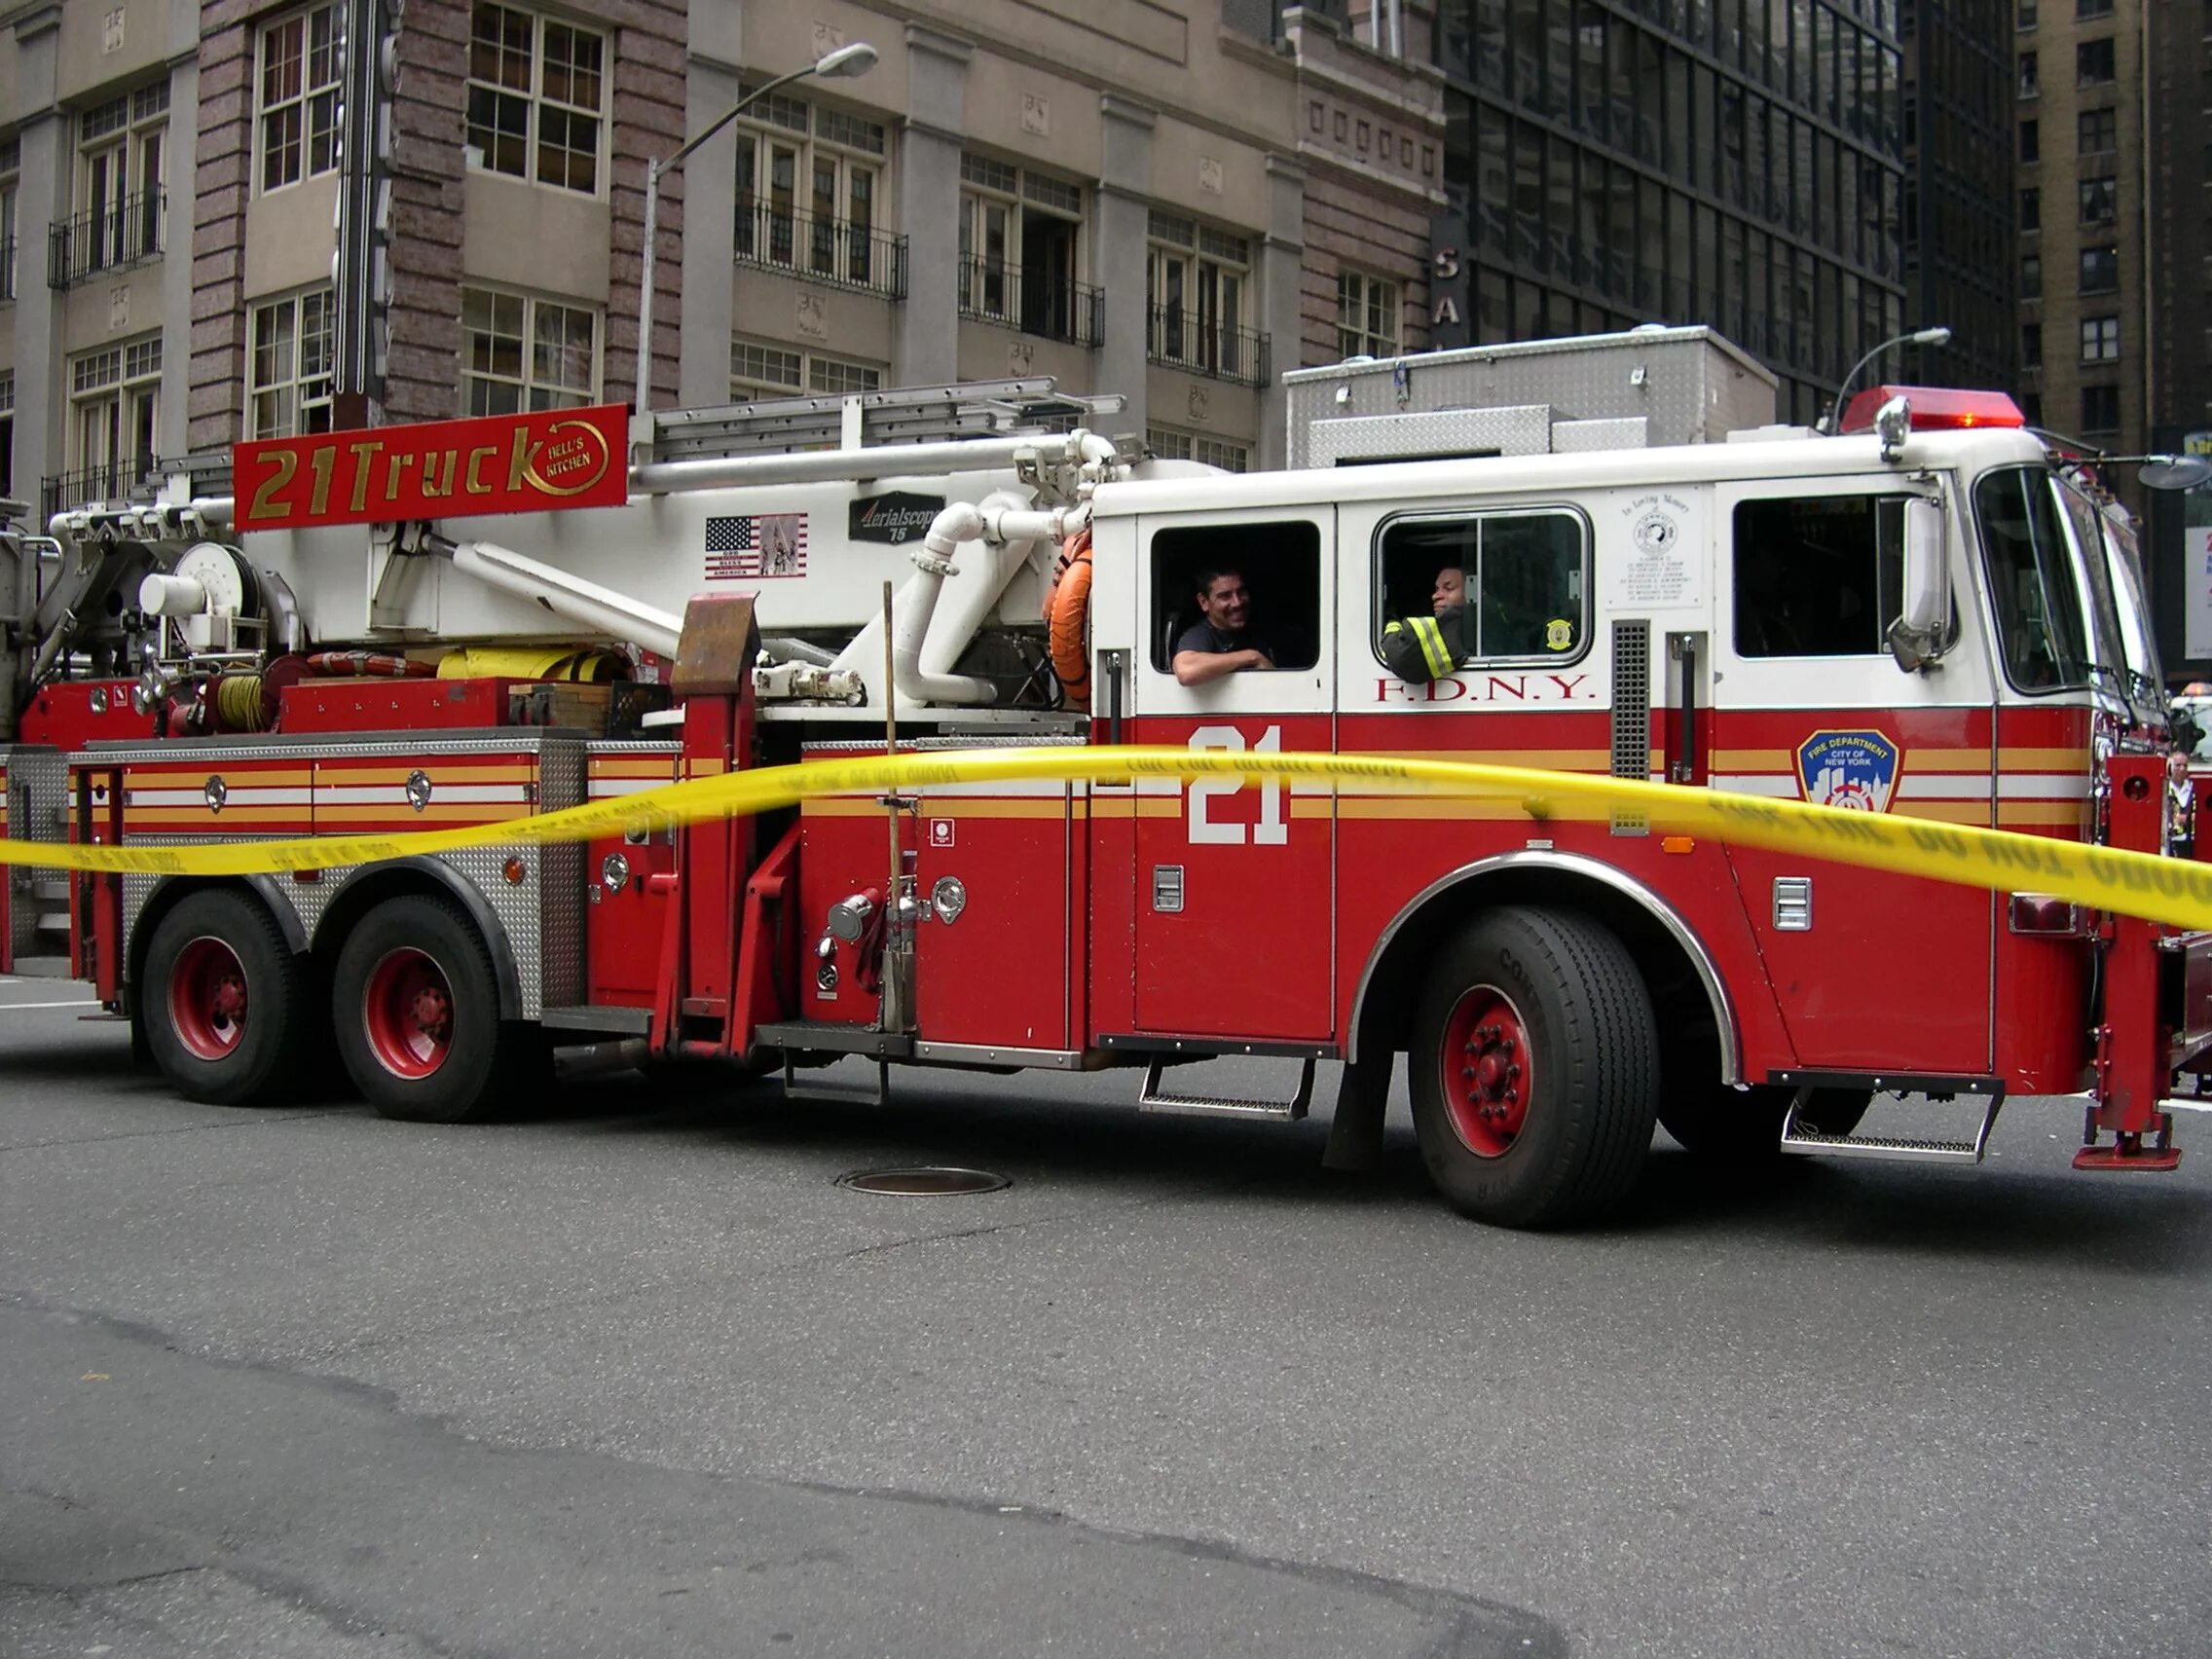 Посадка пожарных в автомобиль. Машина "Fire Truck" пожарная, 49450. Пожарная машинка (20 см) Fire-Fighting vehicle. Fire engine пожарная машина. Американская пожарная машина.